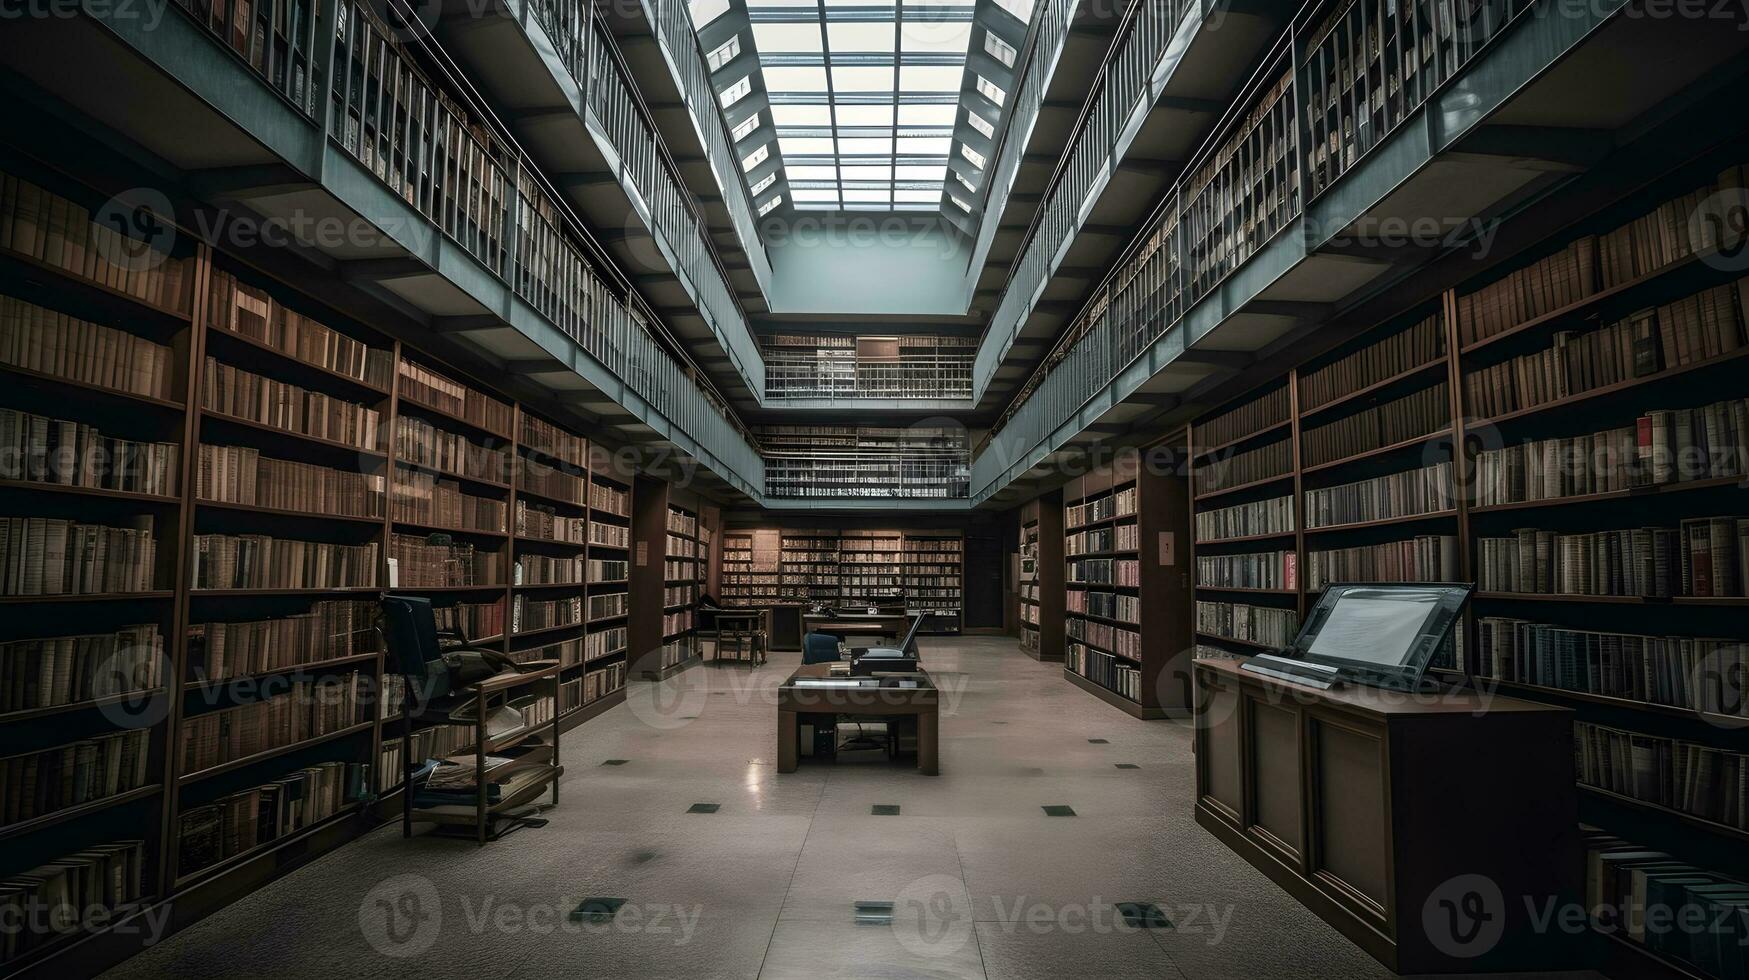 vecchio biblioteca interno con libri su scaffali ,generativo ai foto